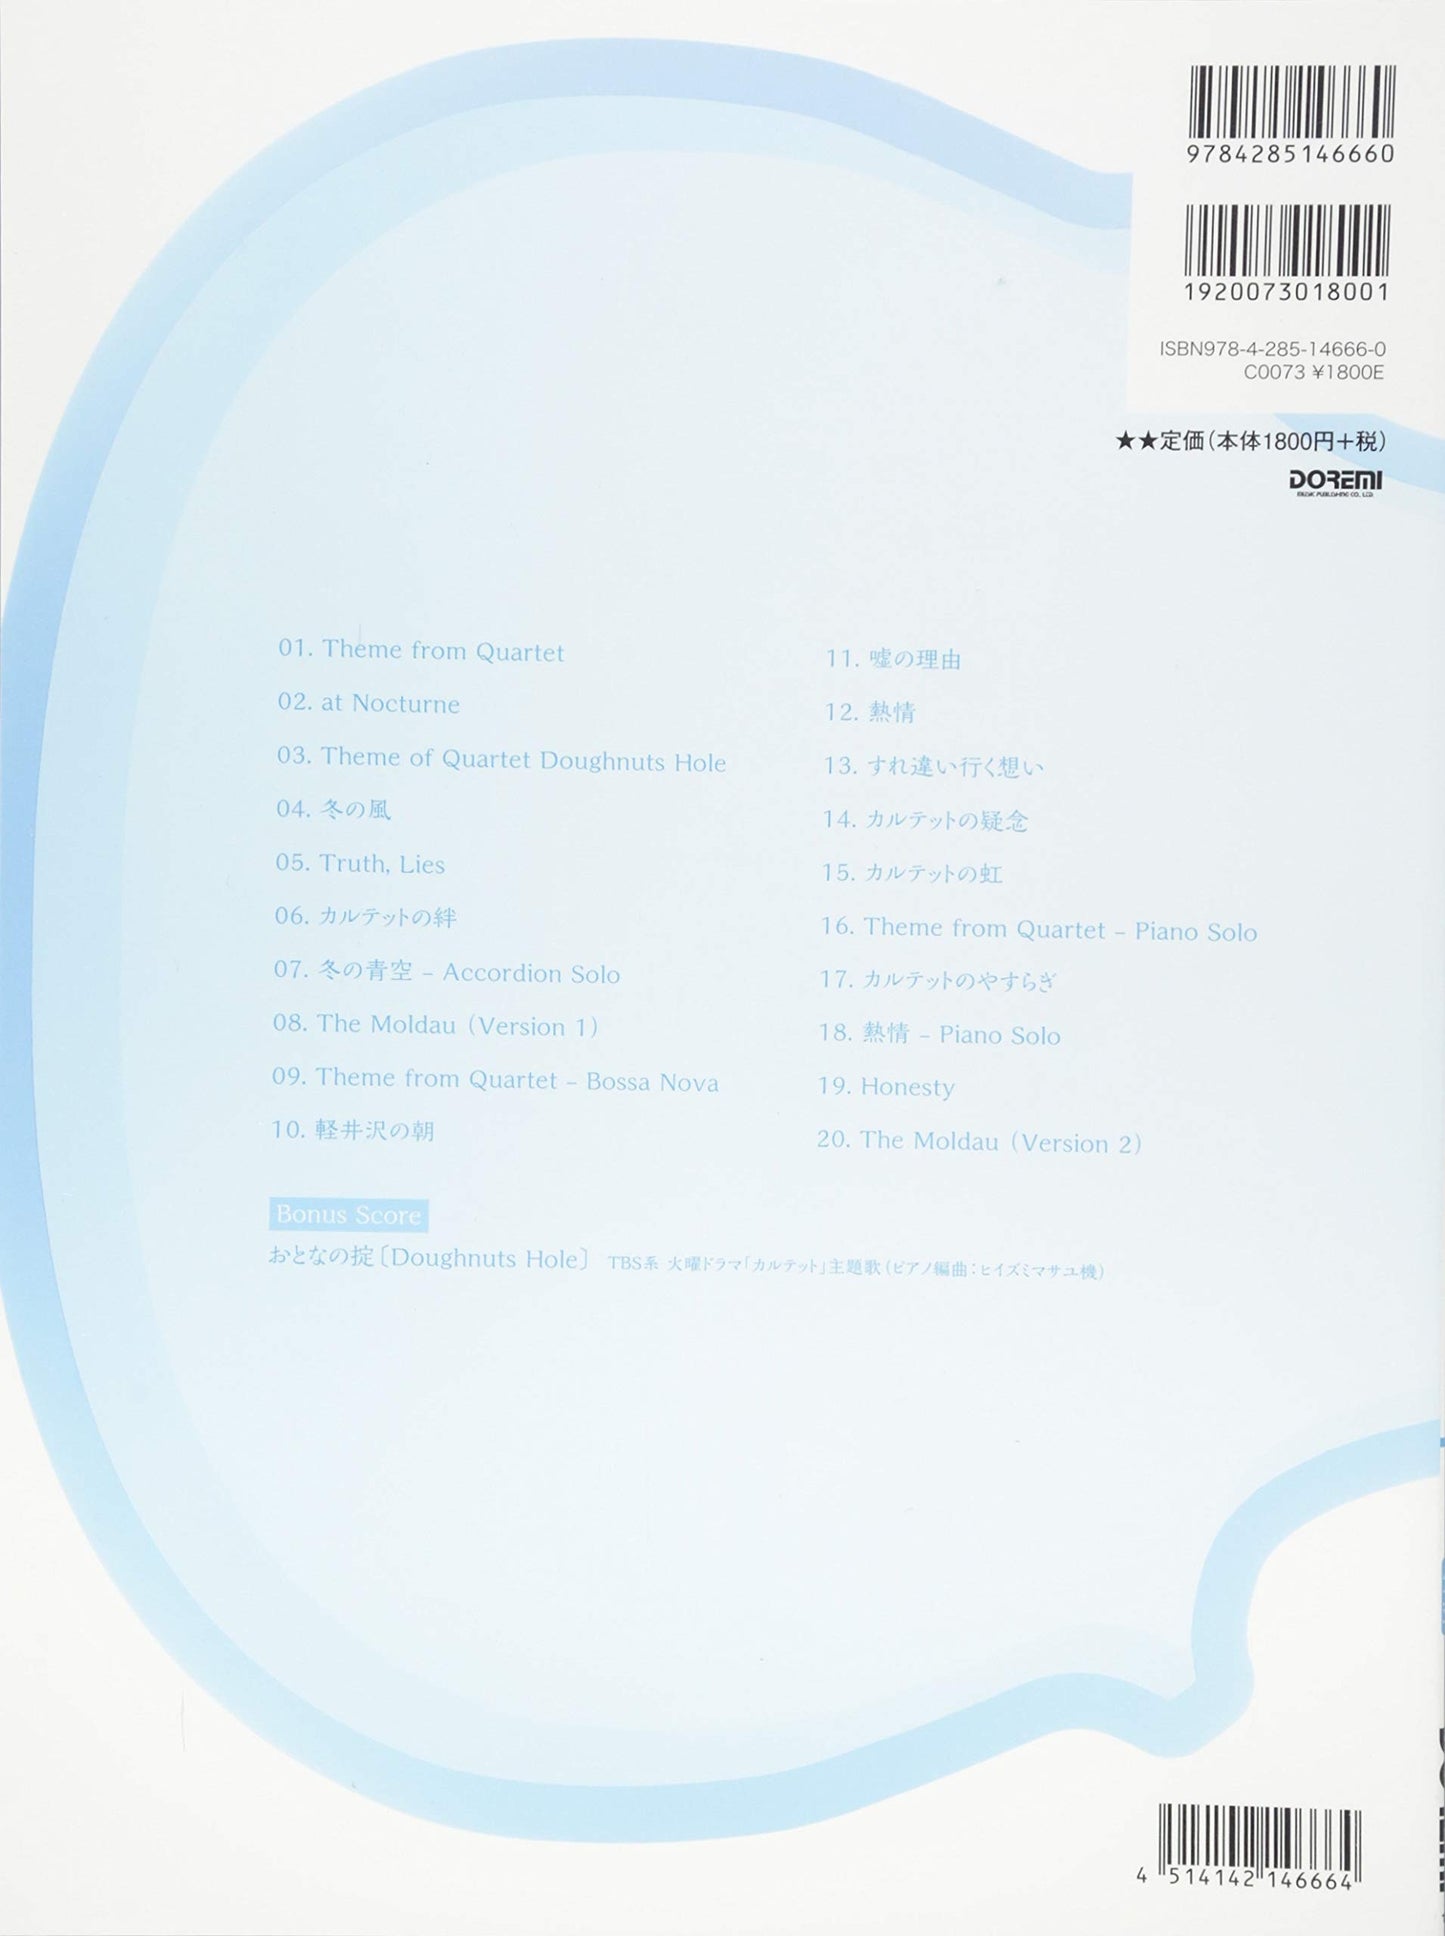 TV Drama "Quartet" Original Soundtrack for Piano Solo Official Sheet Music Book